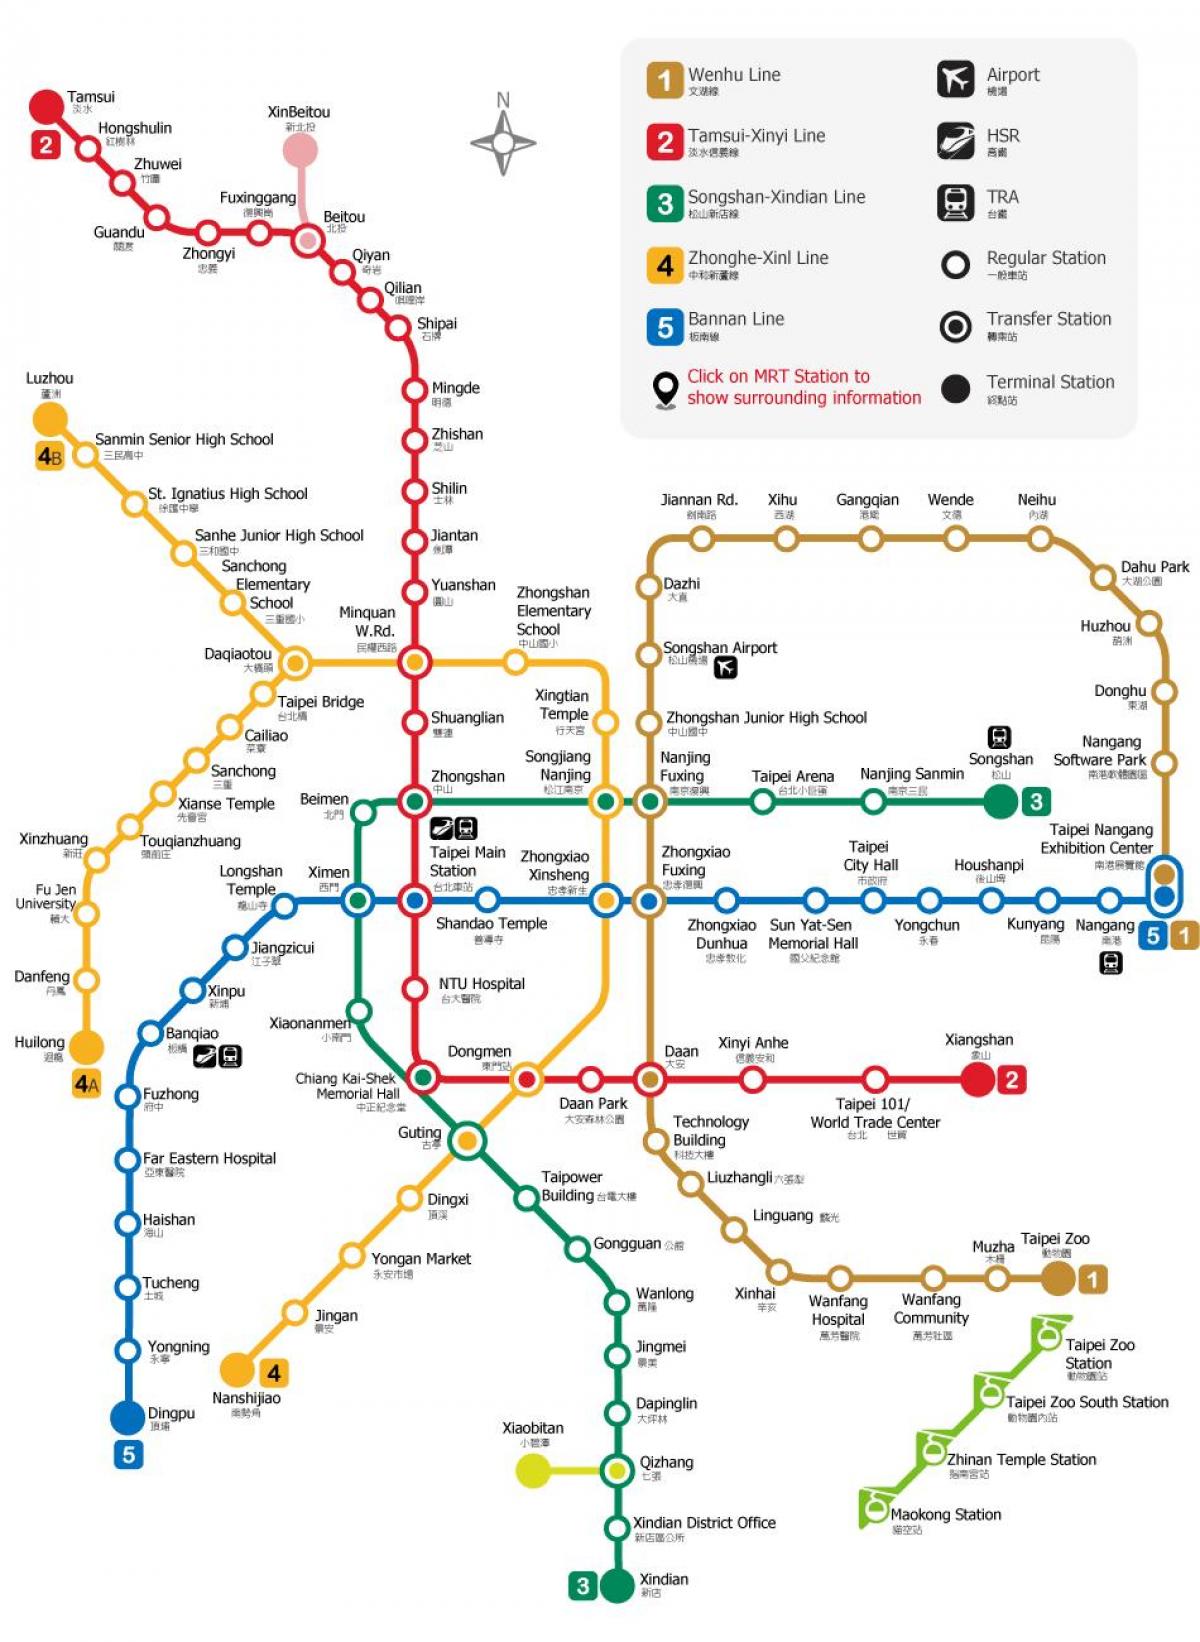 L'estació de metro de Taipei mapa